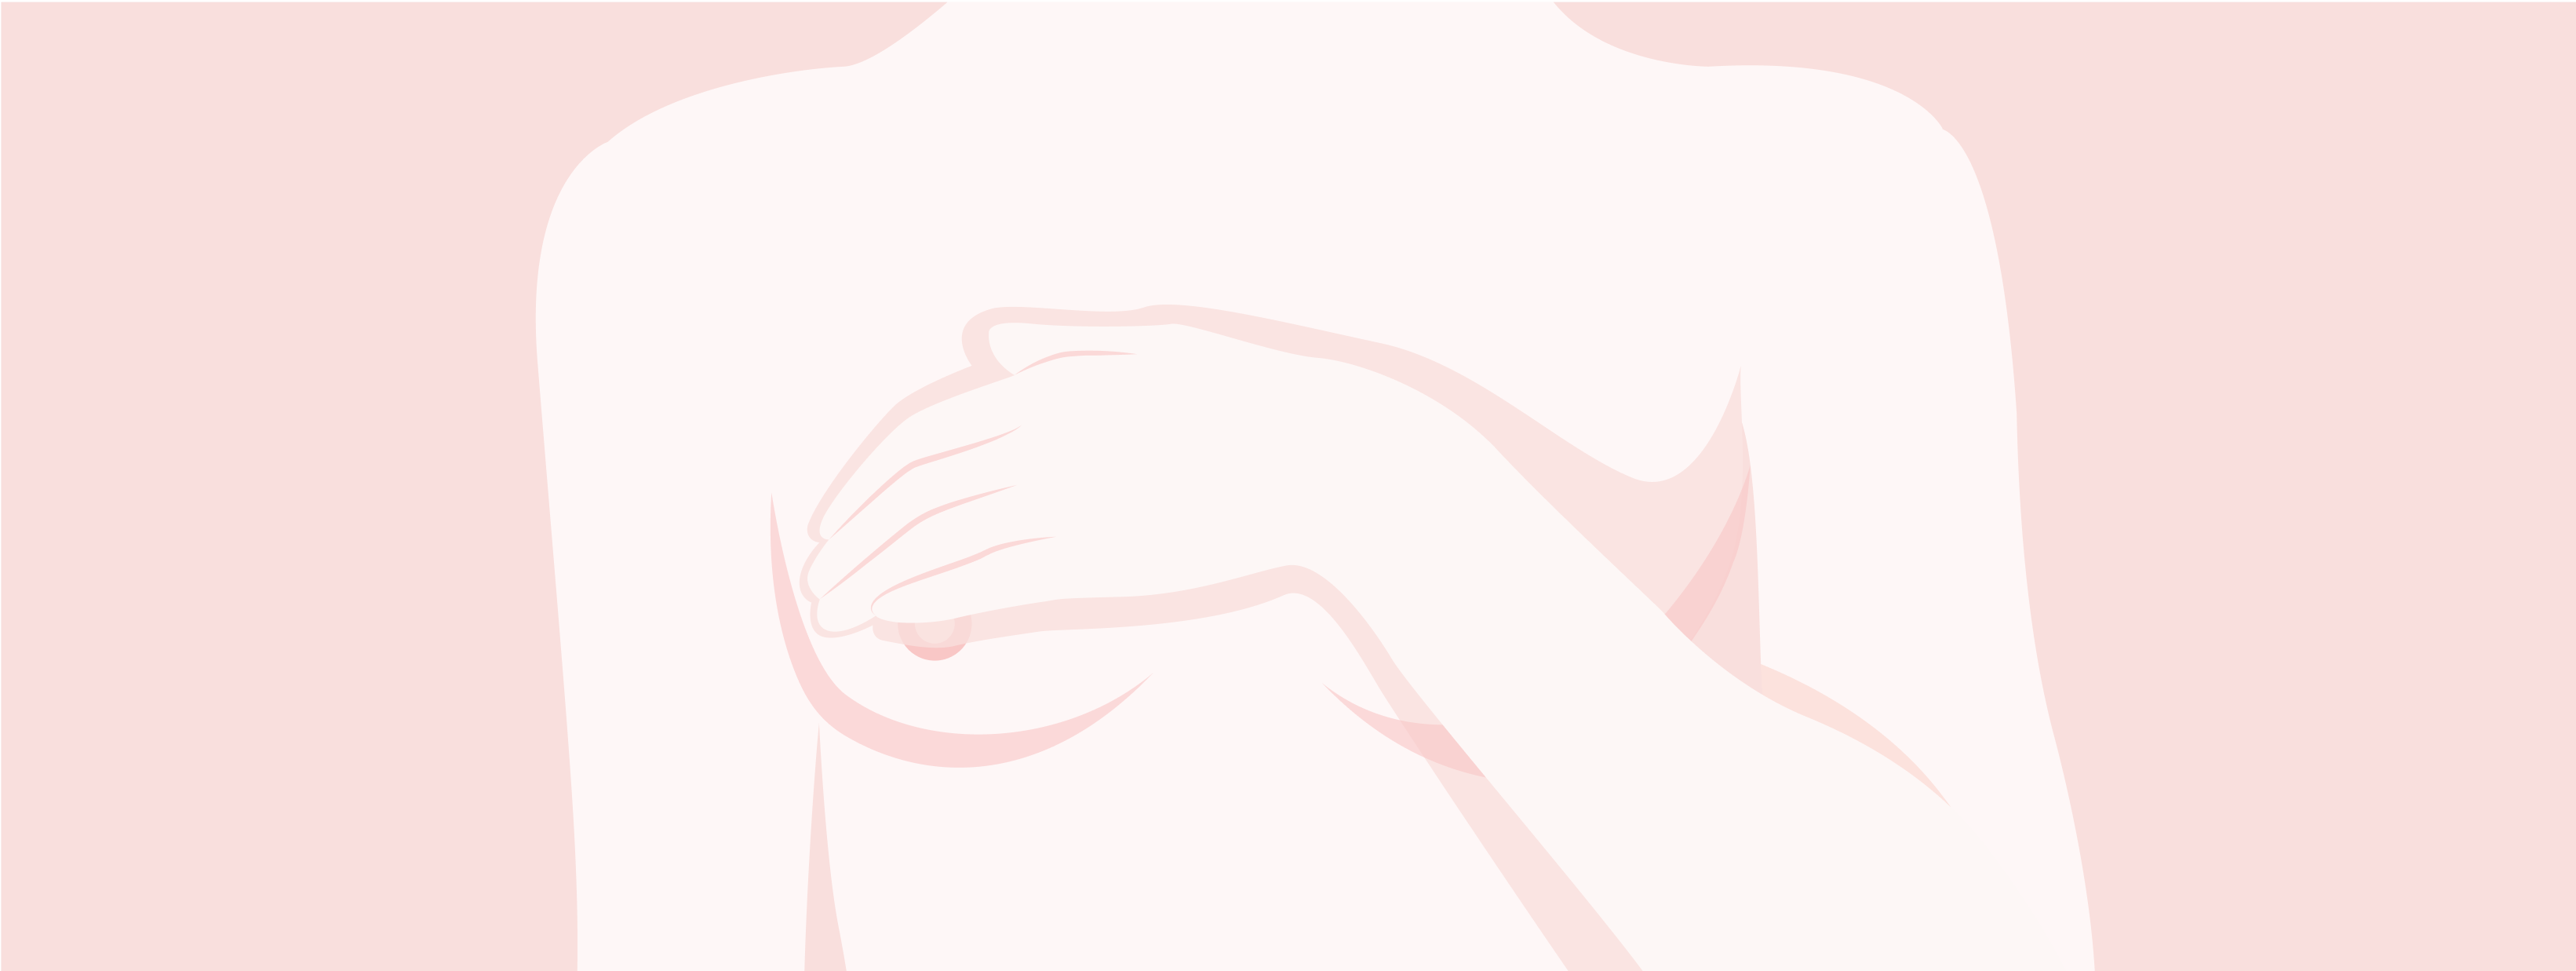 Illustrazione della parte superiore del corpo femminile con la scritta TNBC. La donna si tiene una mano sul seno.